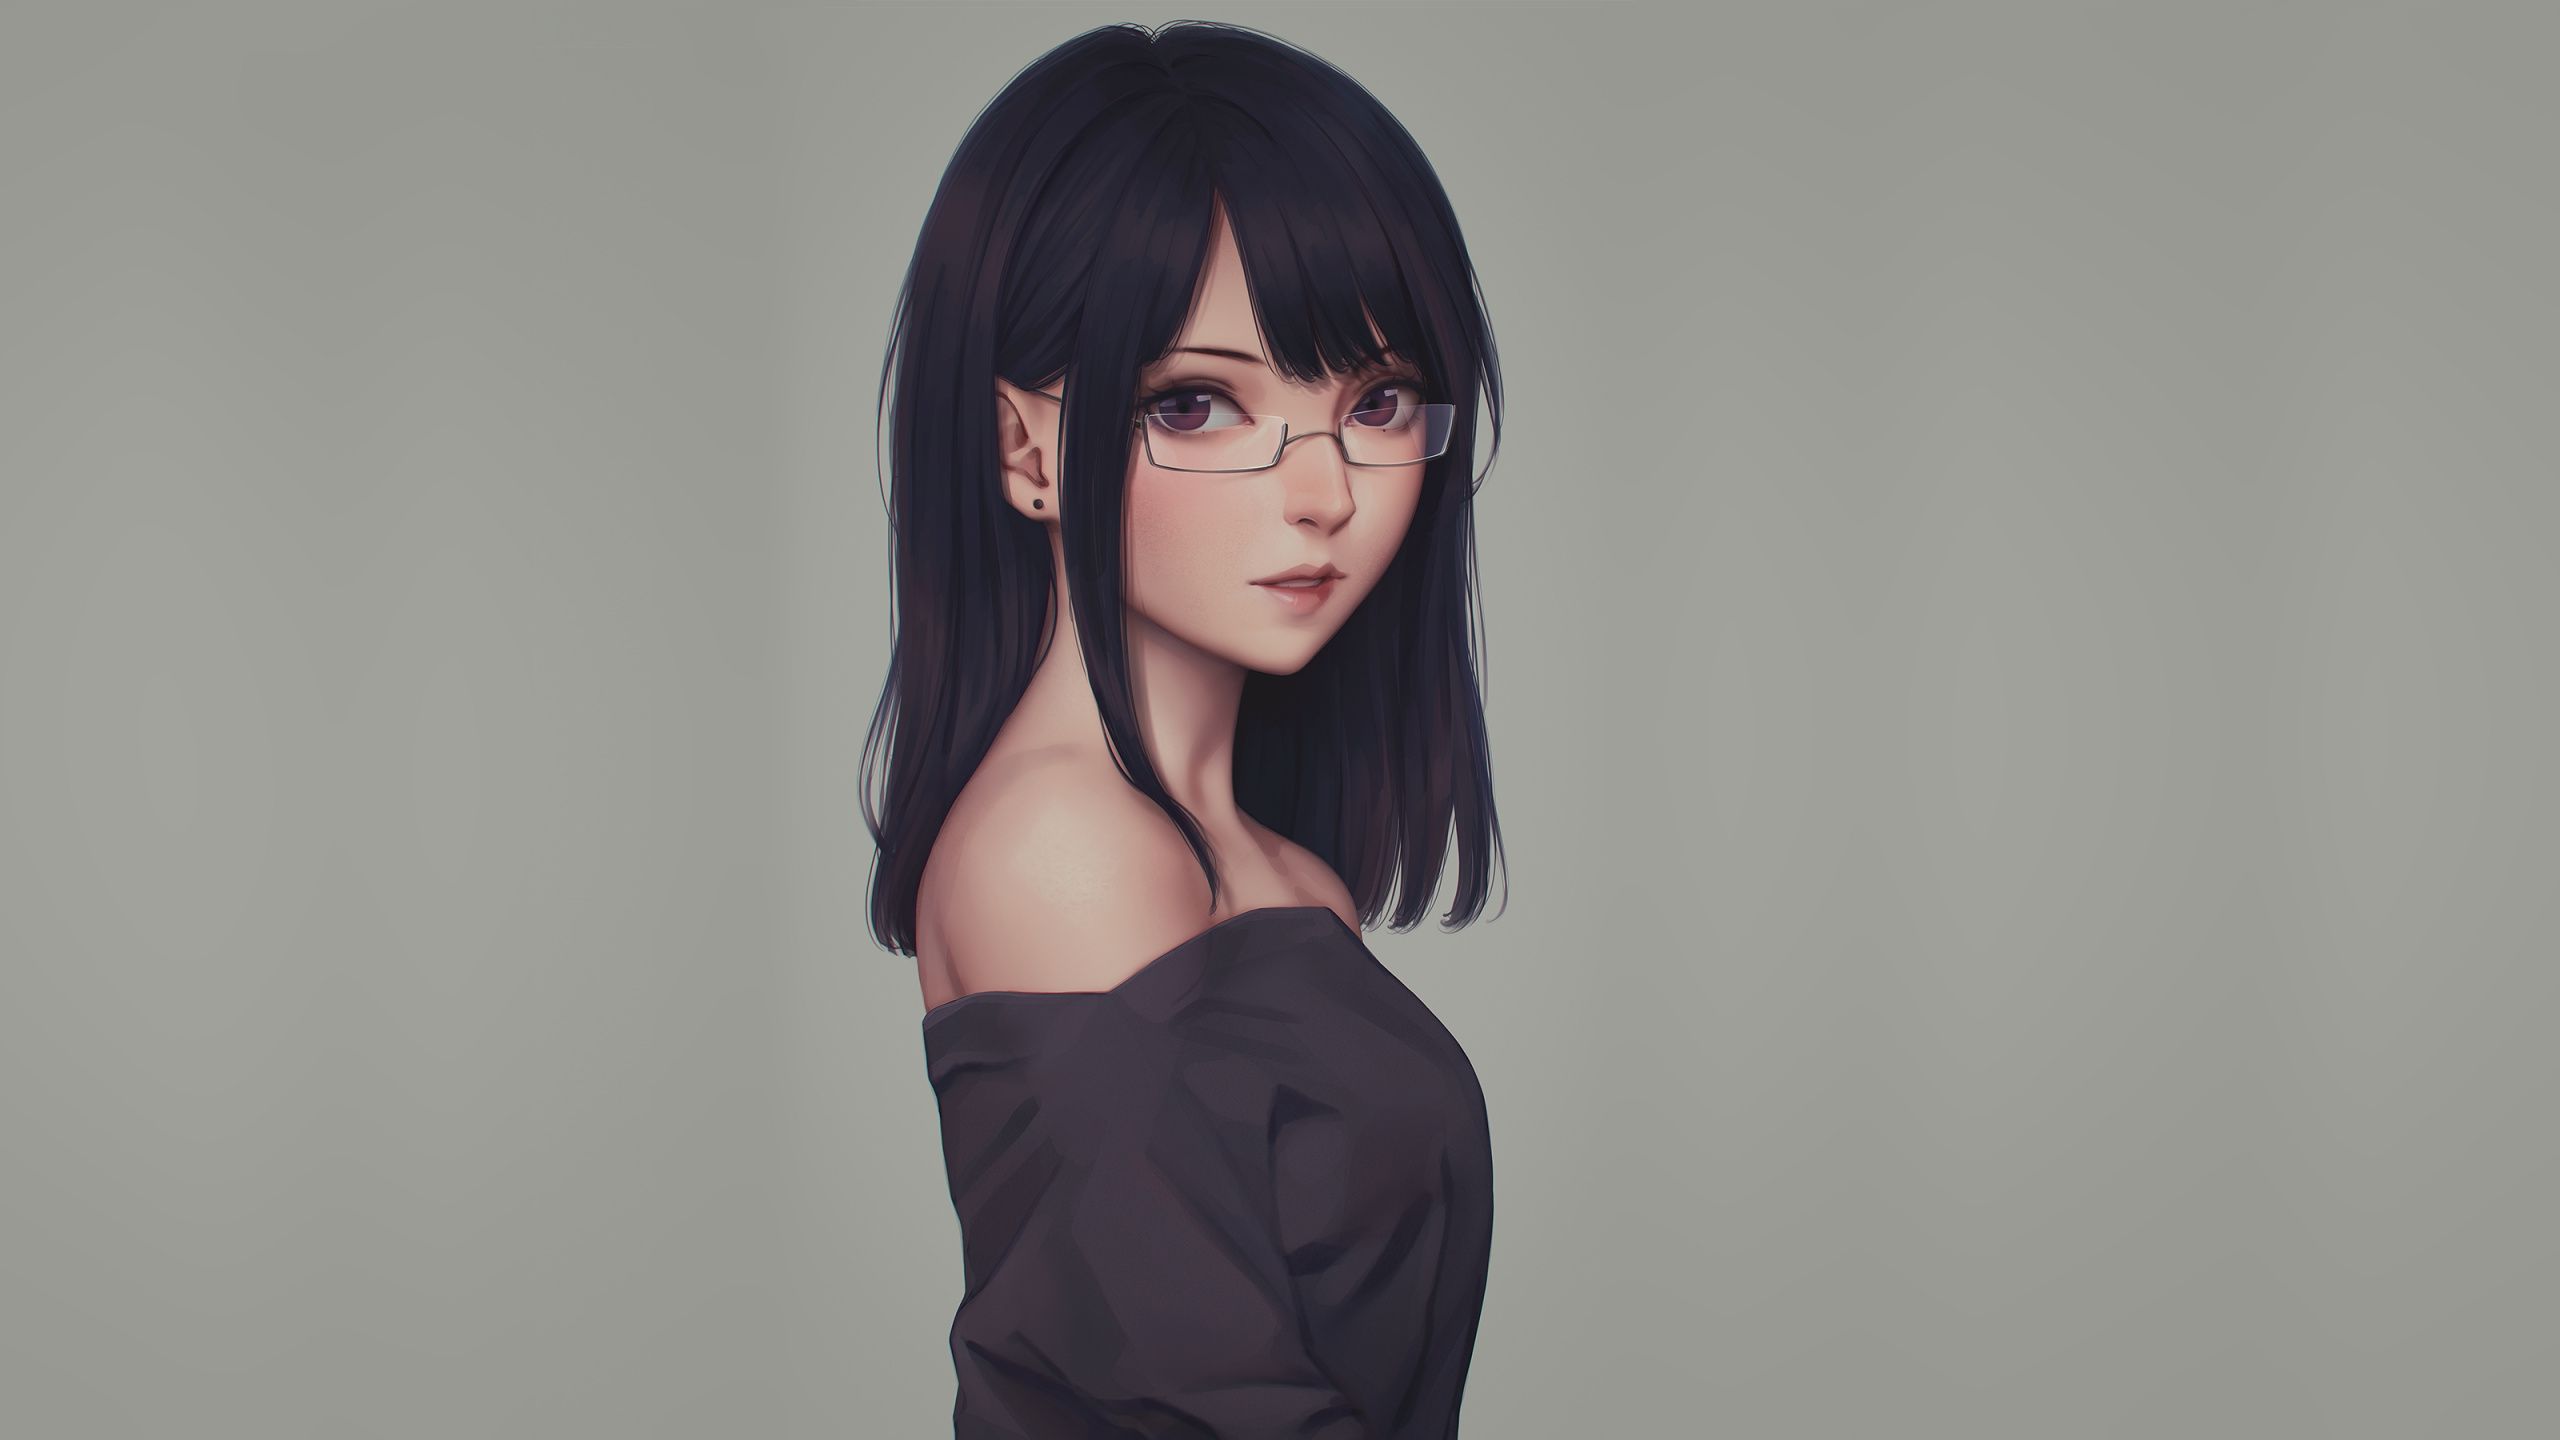 Download Anime girl, beautiful, glasses, art wallpaper, 2560x Dual Wide, Widescreen 16: Widescreen